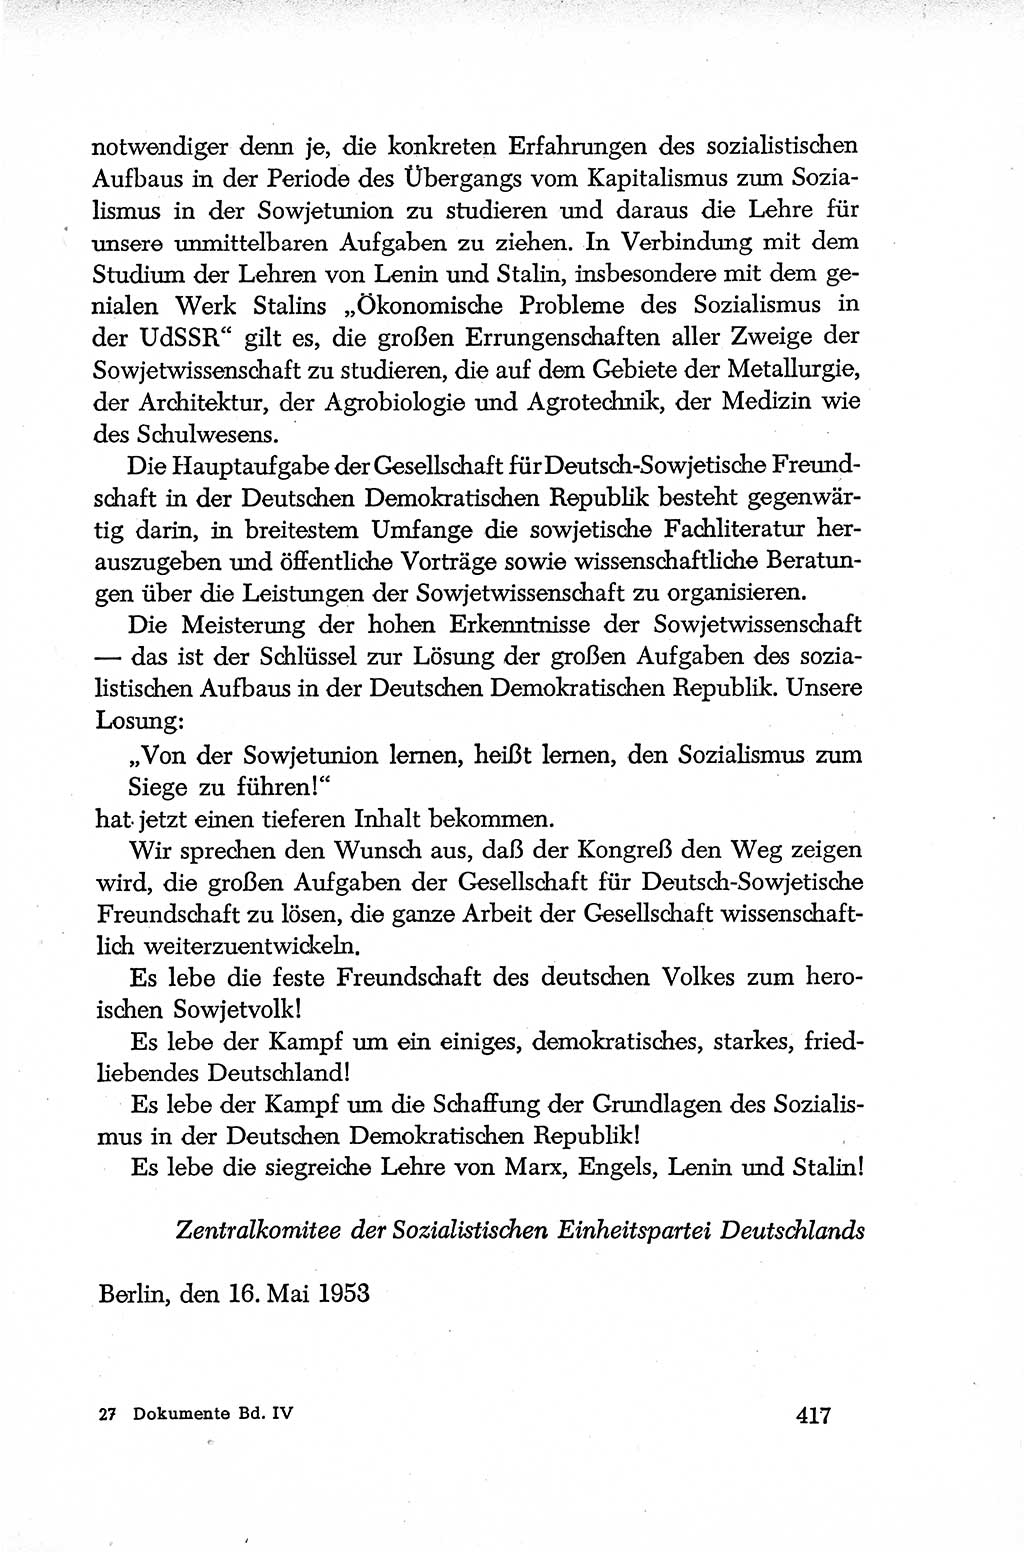 Dokumente der Sozialistischen Einheitspartei Deutschlands (SED) [Deutsche Demokratische Republik (DDR)] 1952-1953, Seite 417 (Dok. SED DDR 1952-1953, S. 417)